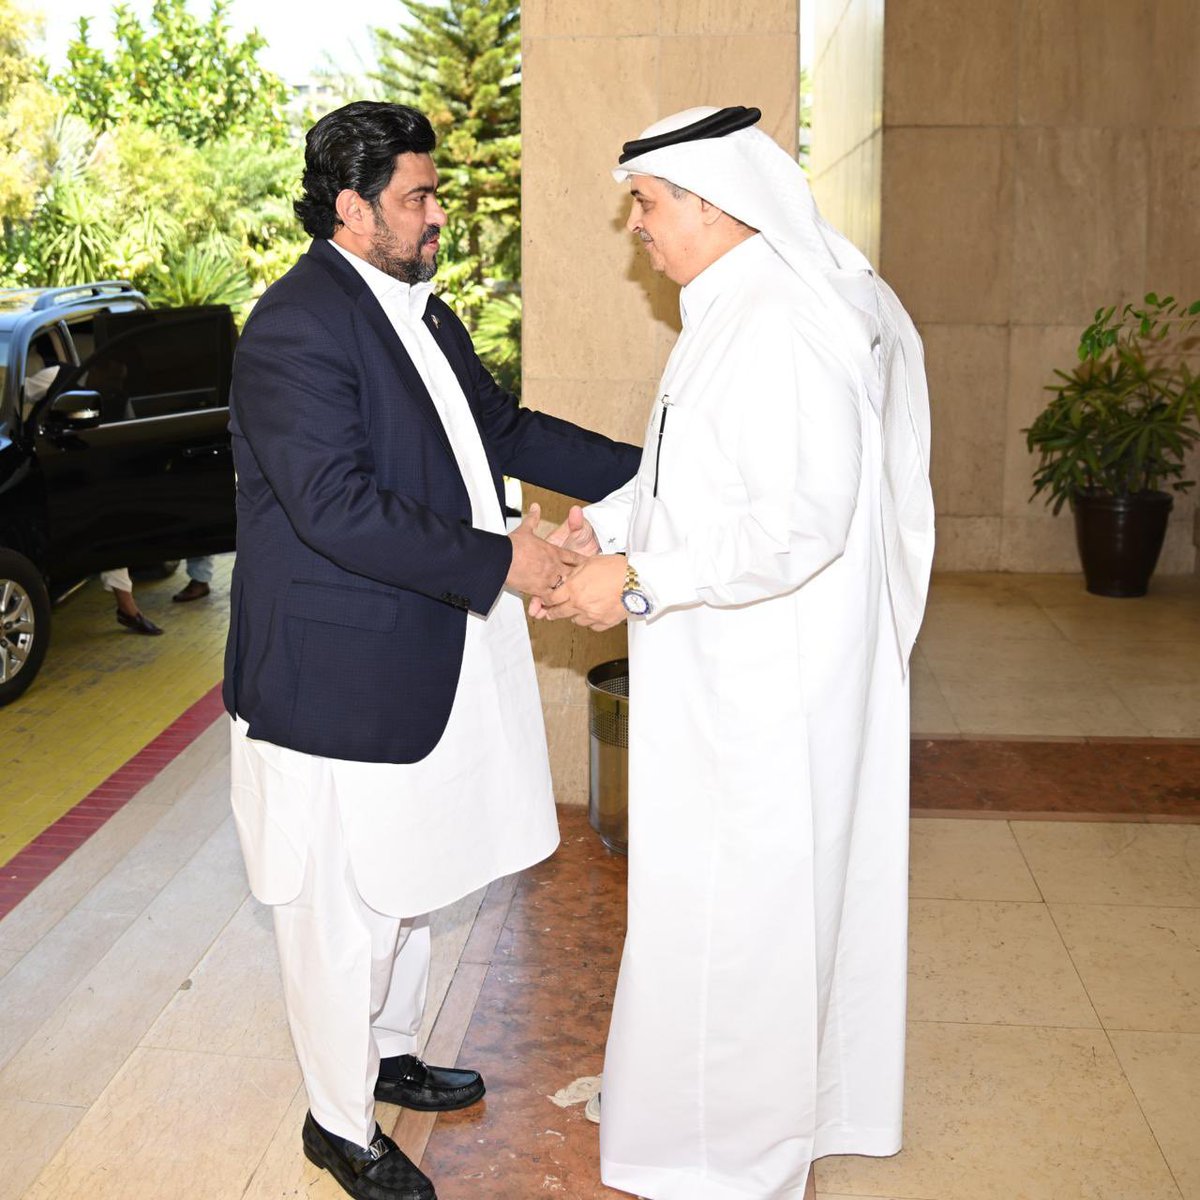 #اسلام_آباد | استقبل سعادة السفير @AmbassadorNawaf حاكم إقليم السند كامران تيسوري، جرى خلال اللقاء تبادل الأحاديث الودية وبحث المواضيع ذات الاهتمام المشترك.